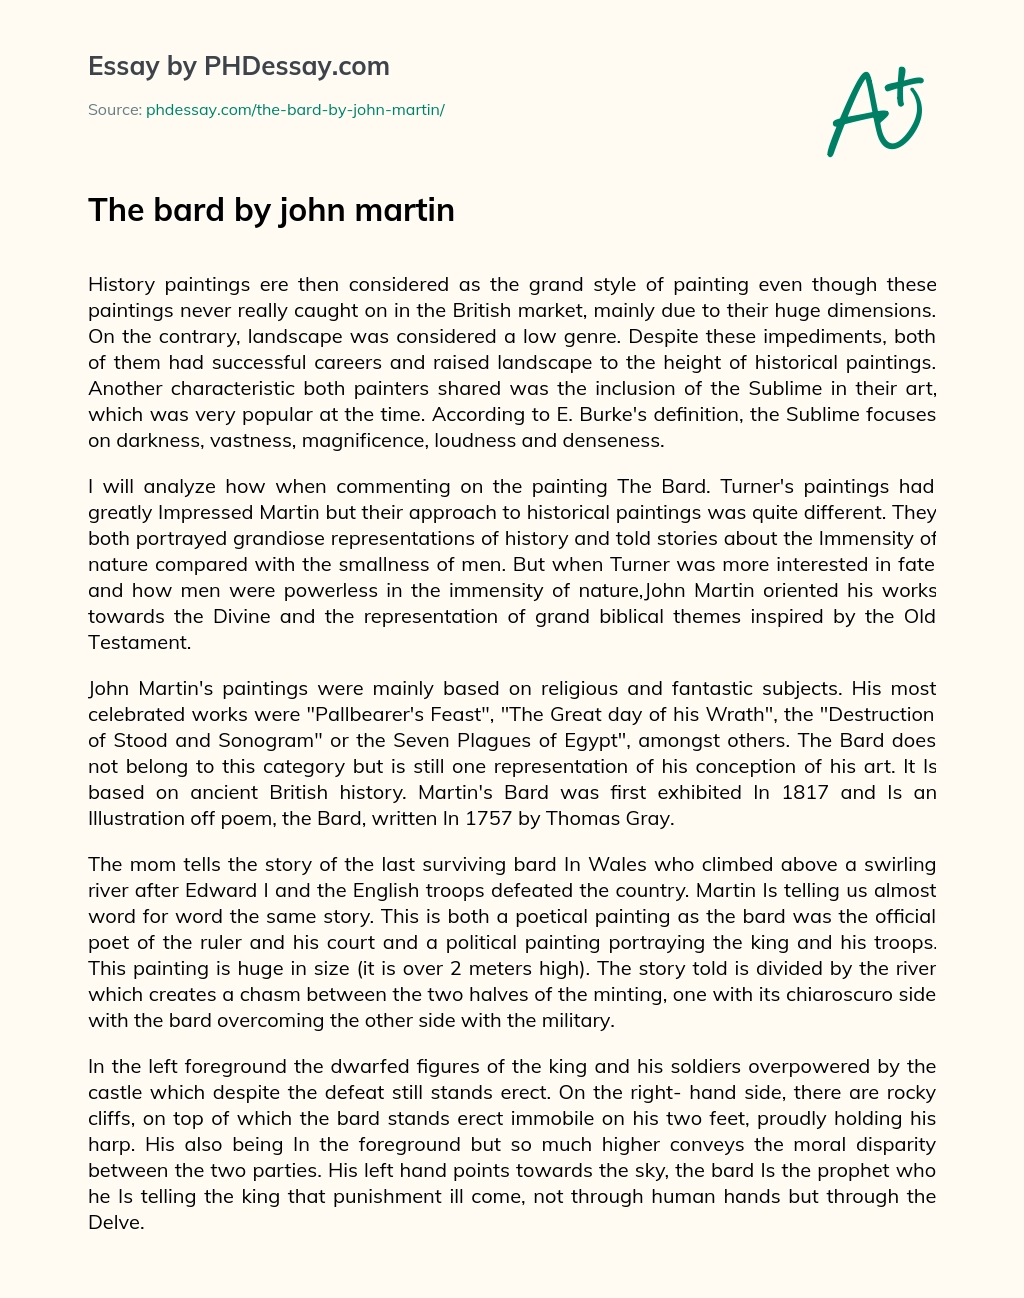 The bard by john martin essay